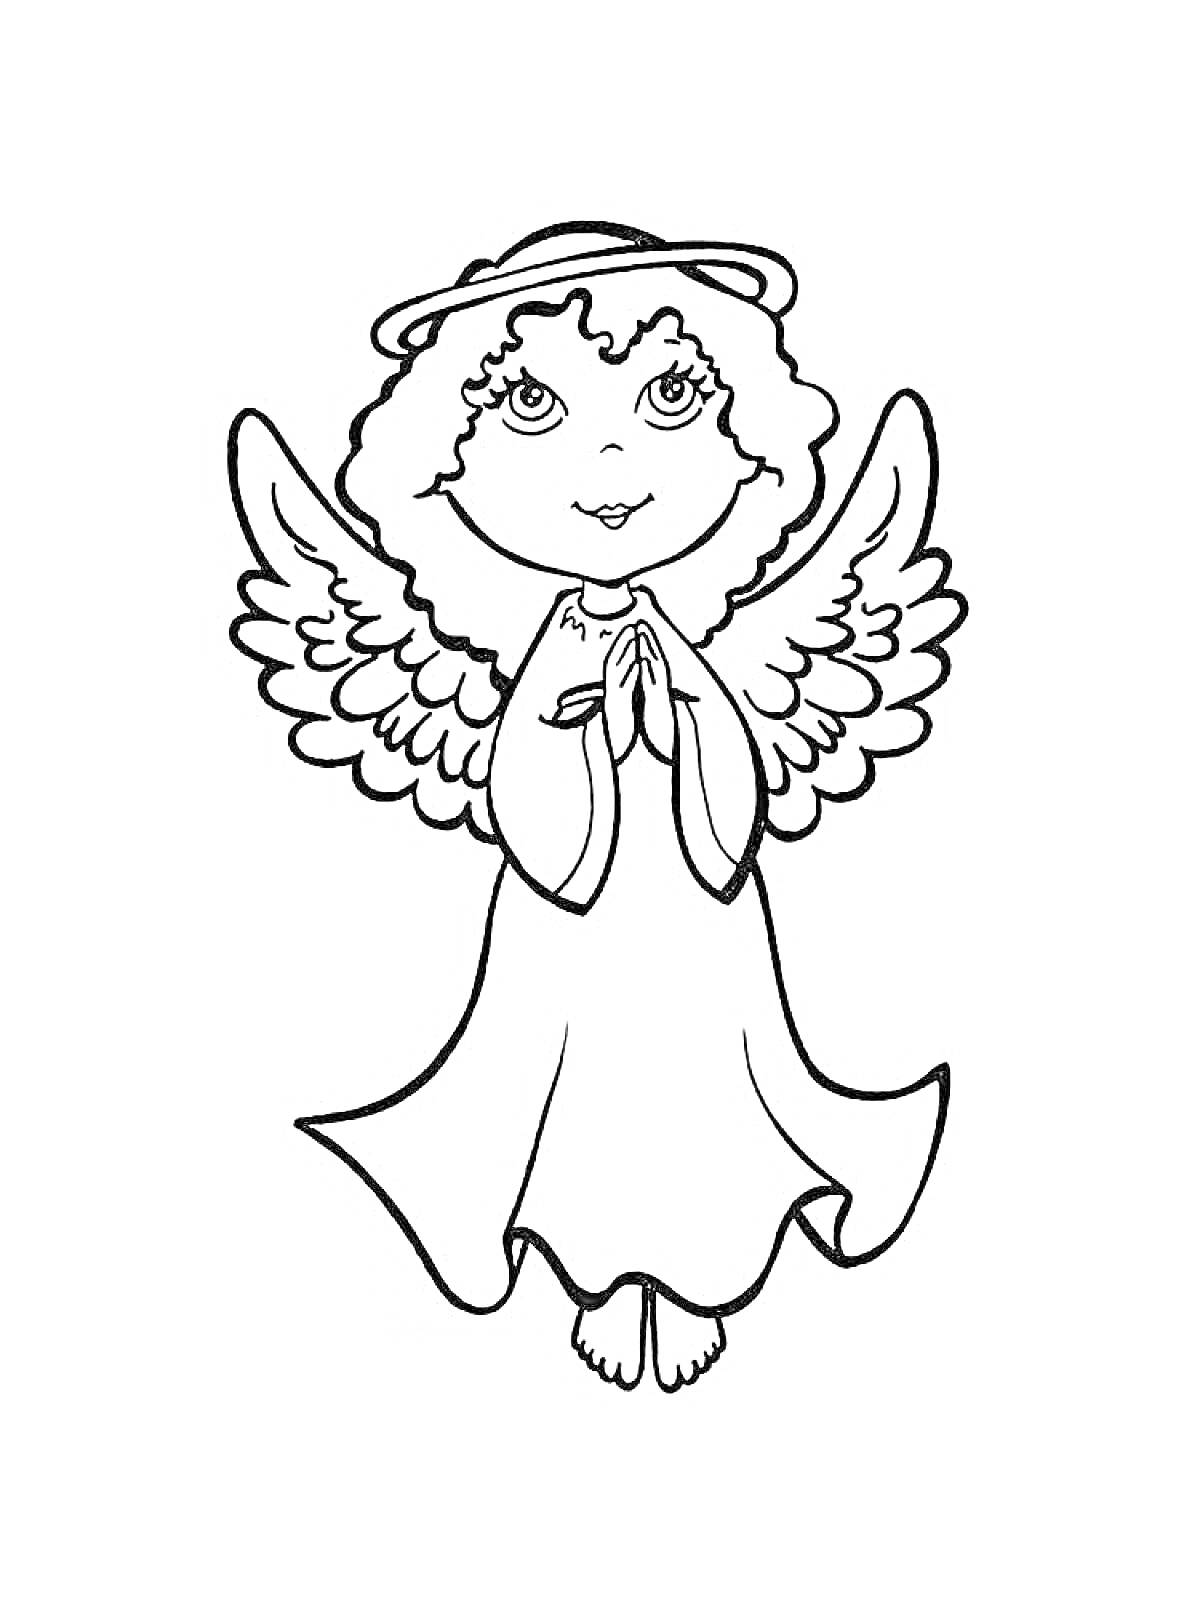 Раскраска Ангел с кудрями и нимбом, стоящий на коленях и молящийся